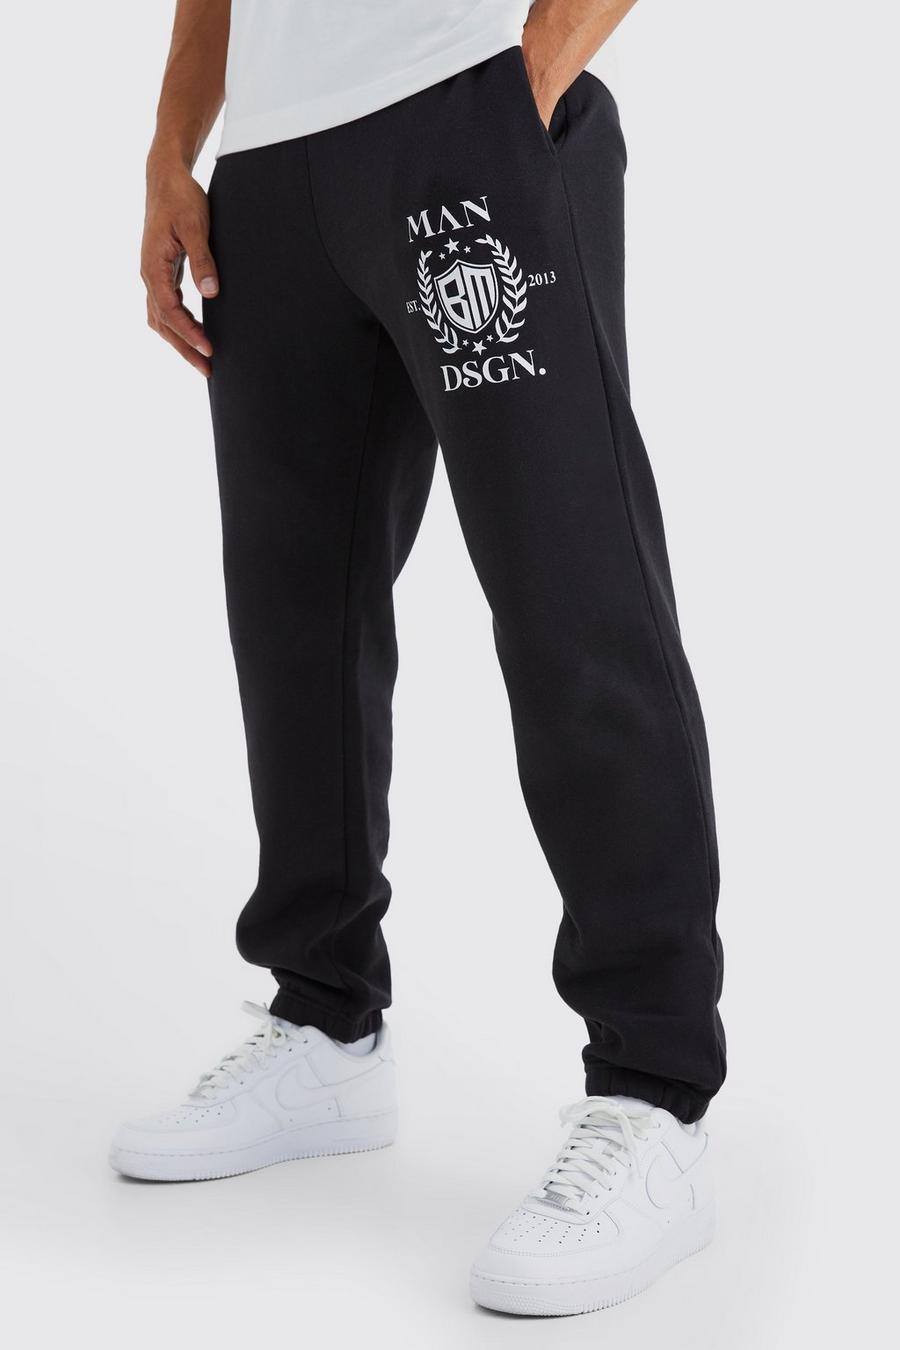 Pantalón deportivo MAN con estampado universitario, Black image number 1